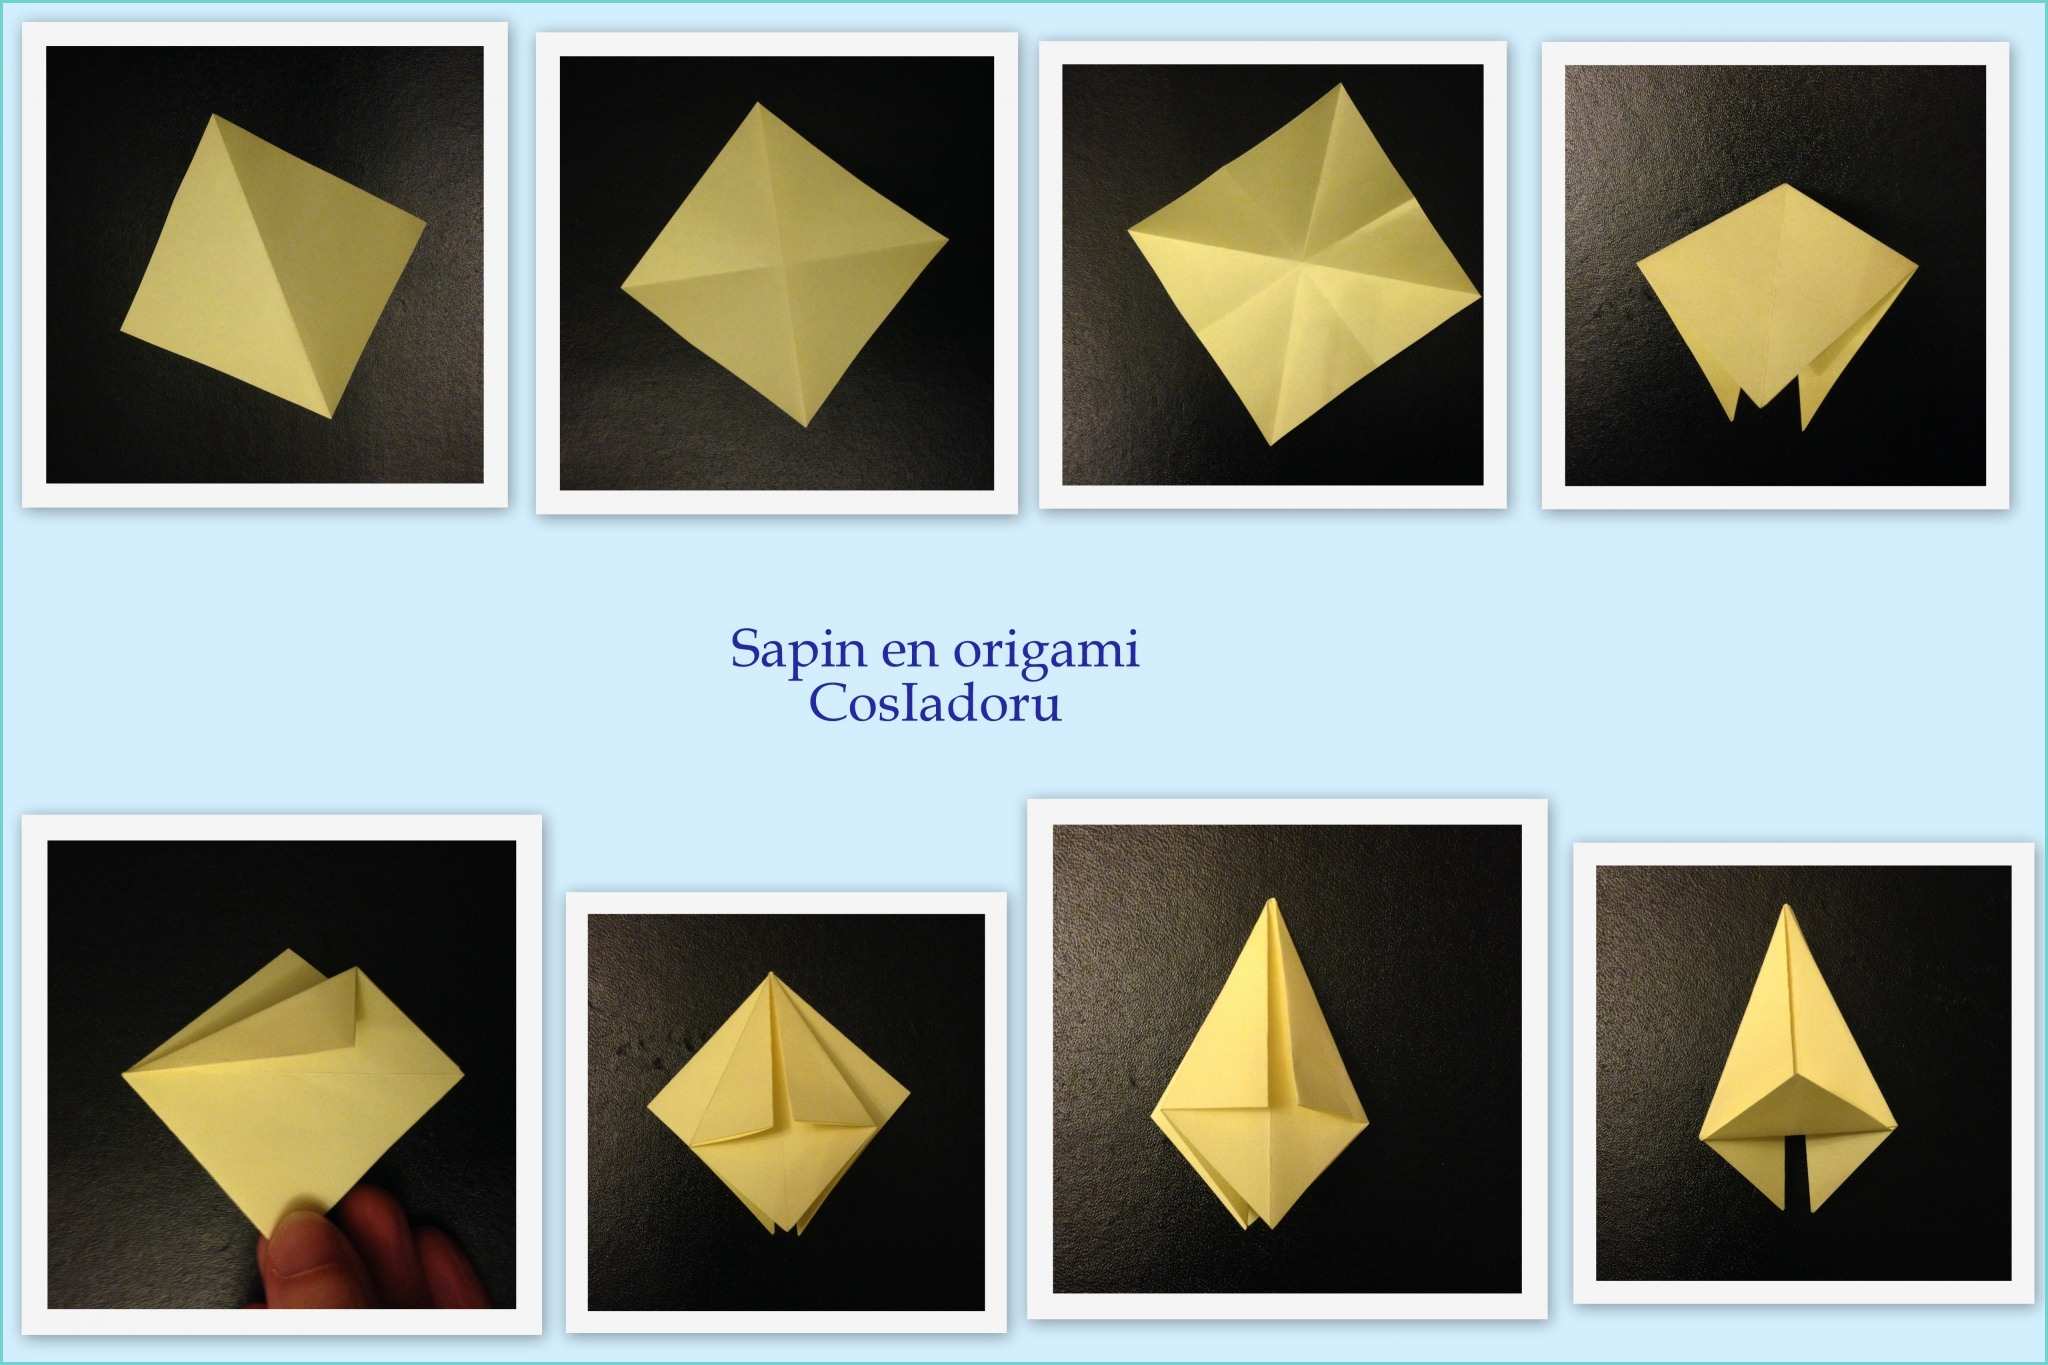 Origami De Noel A Fabriquer origami Sapin De Noel Facile – Obasinc